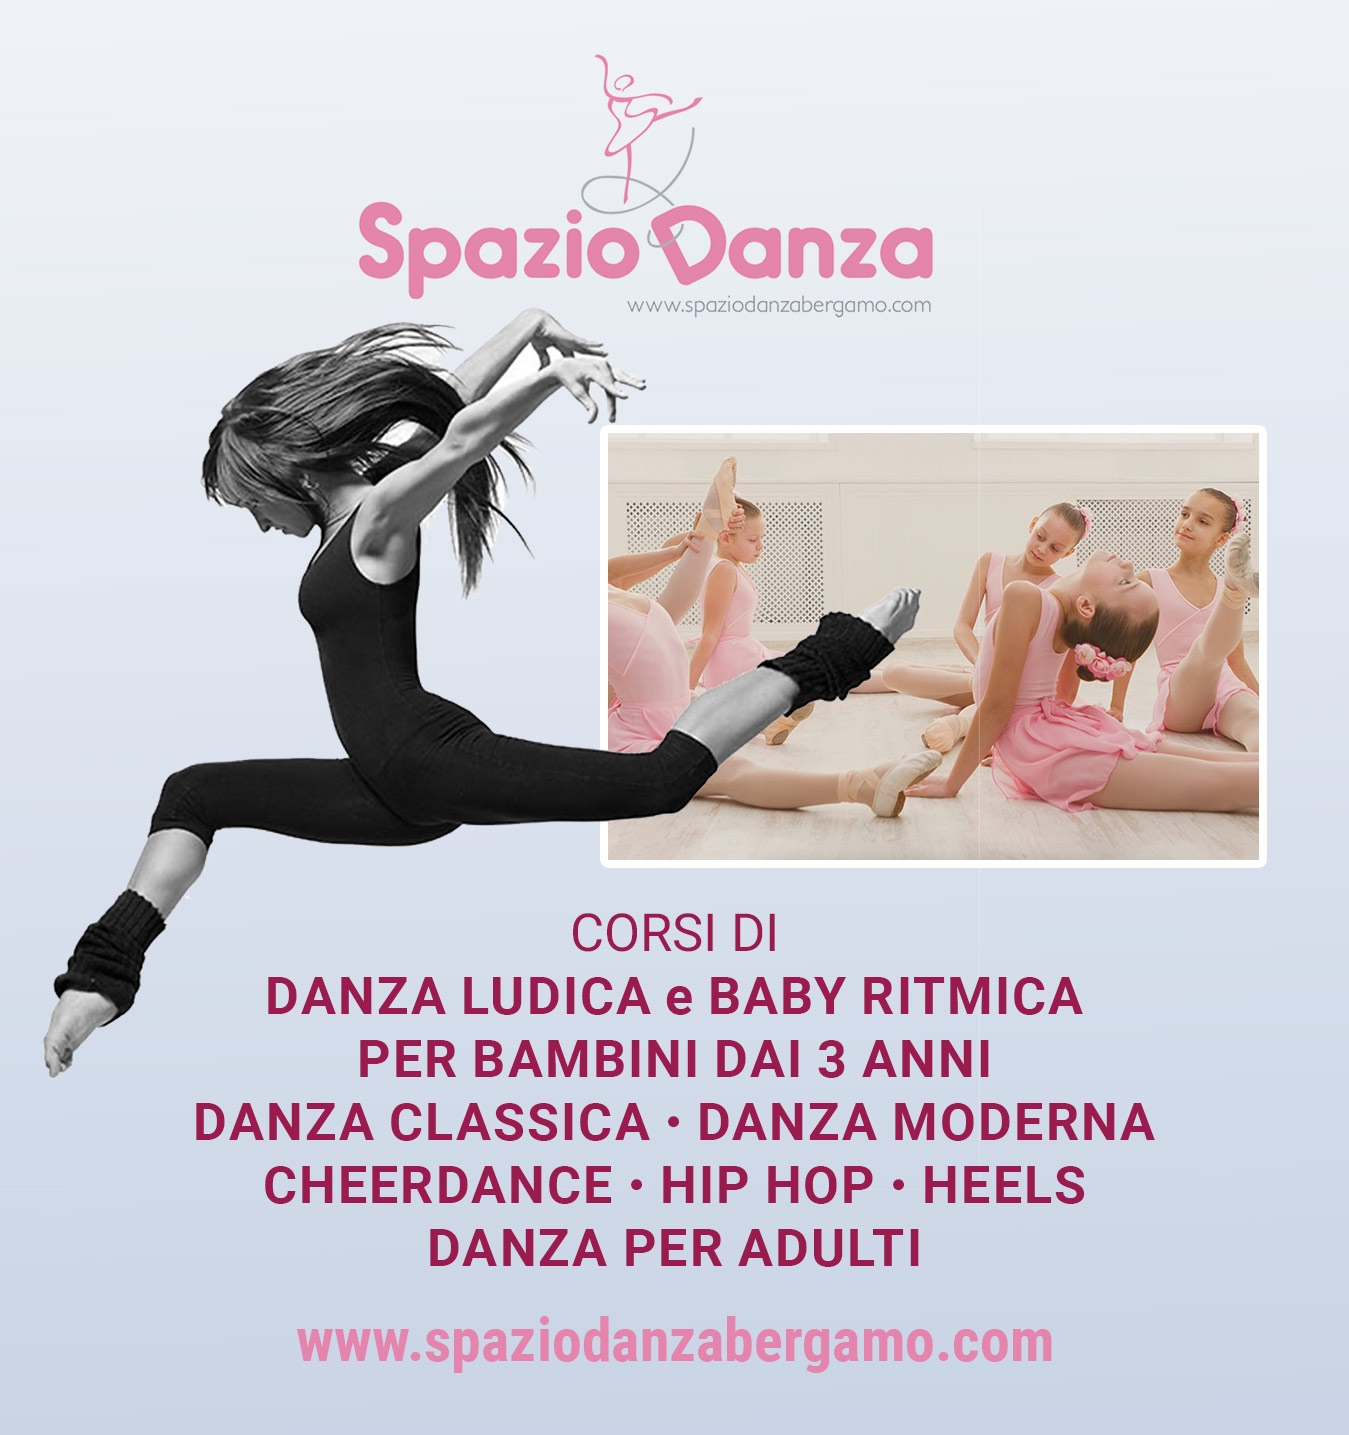 Spazio Danza Bergamo